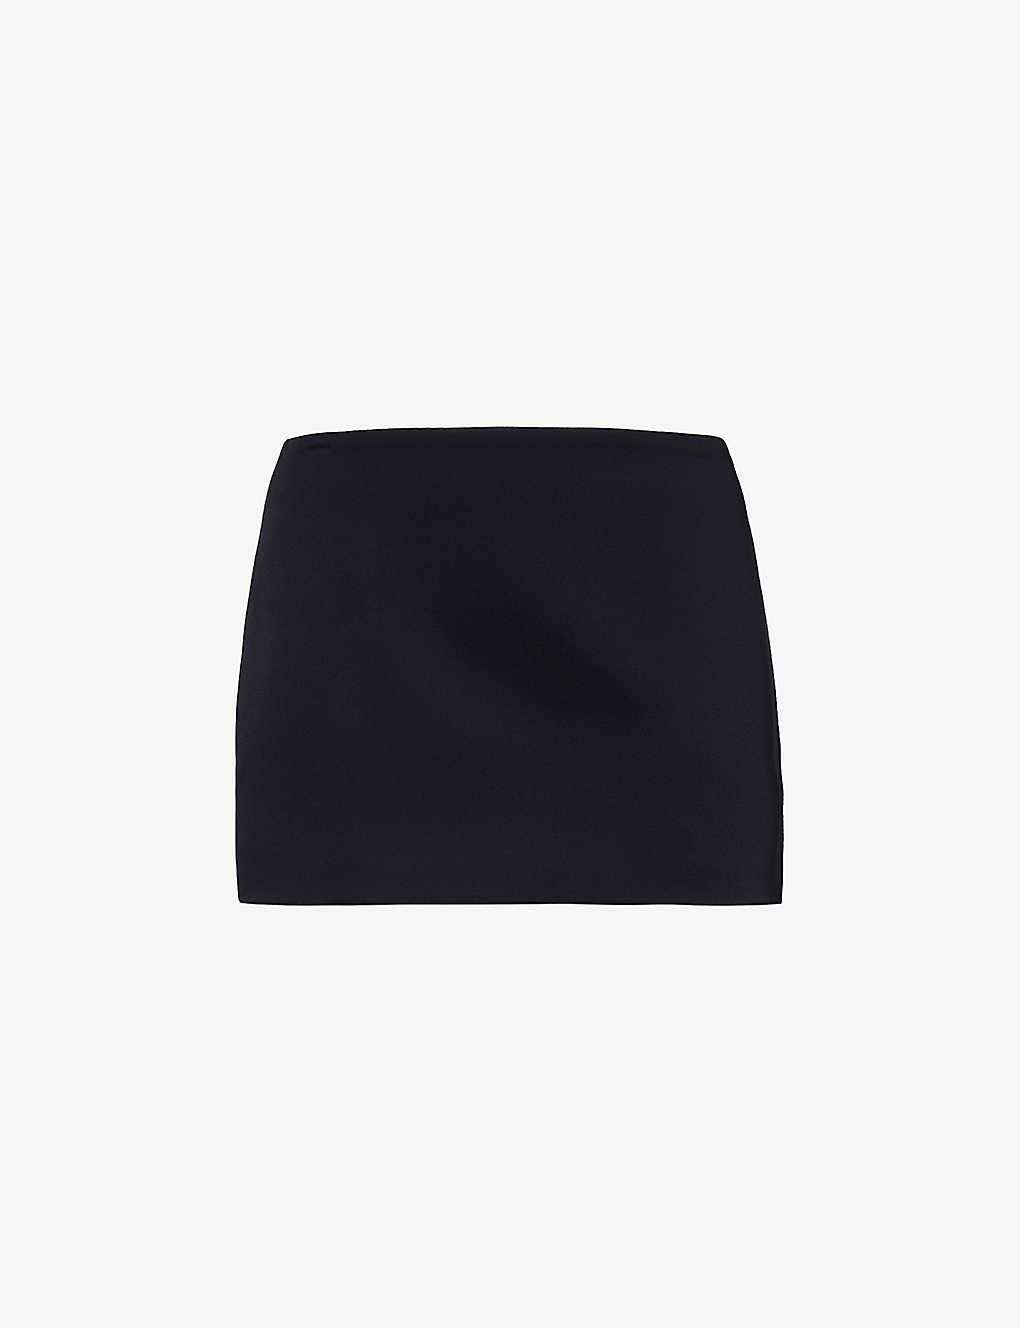 Shop Khaite Women's Black Jett Clean-lined Satin Mini Skirt